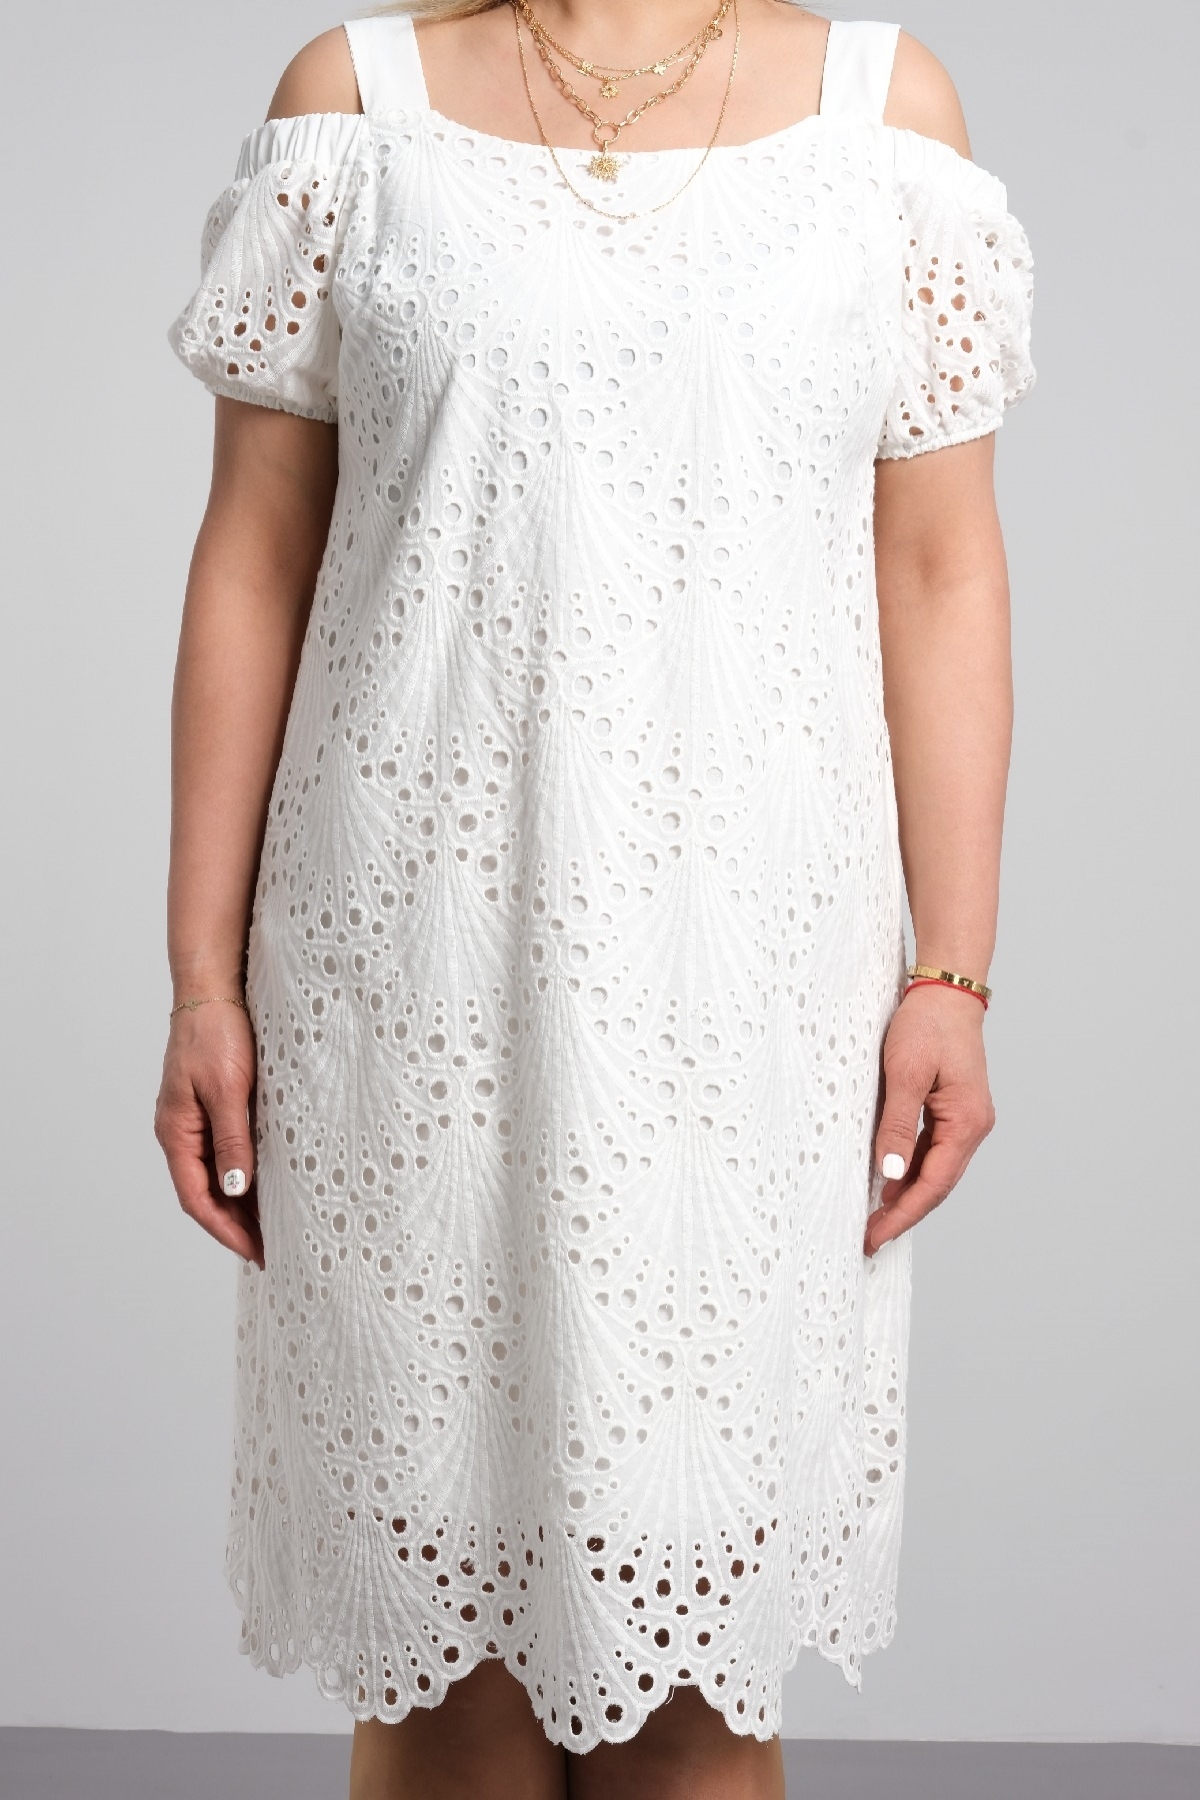 istiridye dantel modelli askılı omuz dekolteli şık büyük beden kısa yazlık elbise 